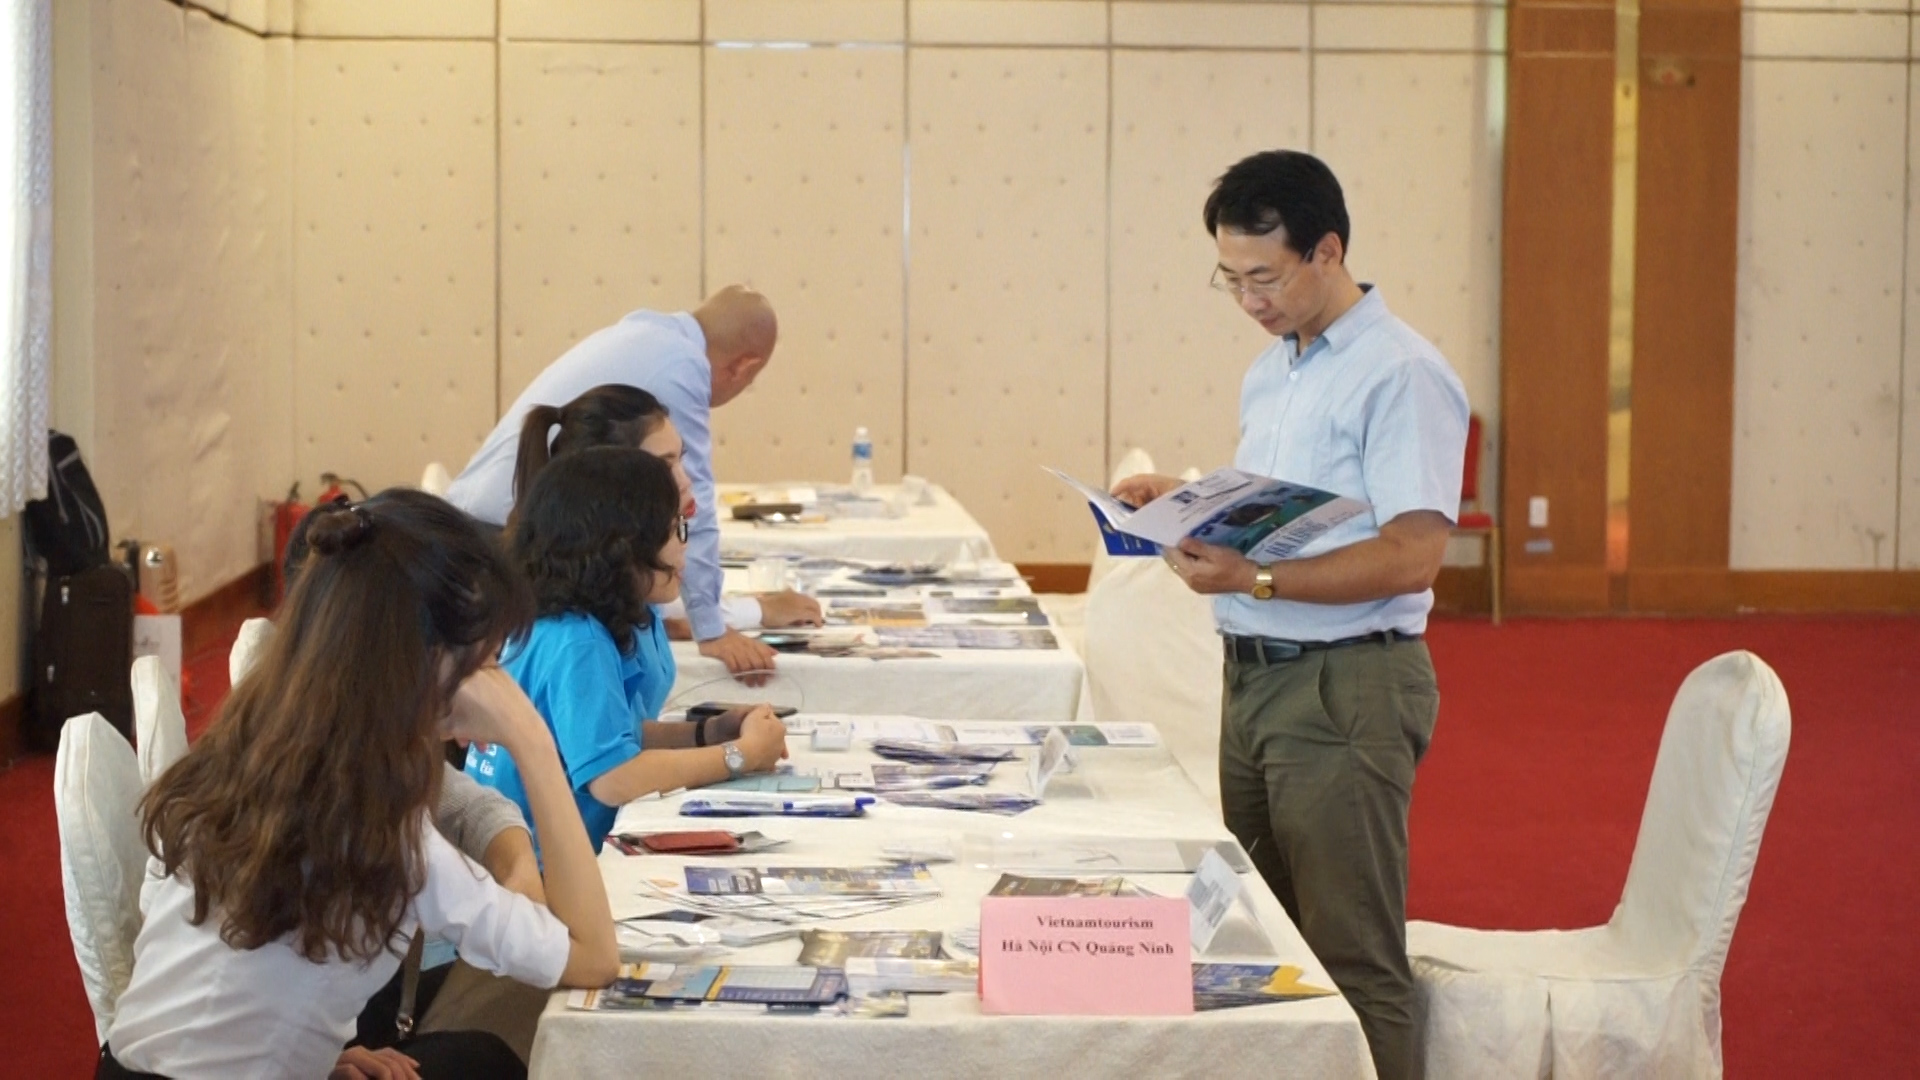 Doanh nghiệp du lịch Quảng Ninh trưng bày các ấn phẩm giới thiệu sản phẩm du lịch tới các doanh nghiệp du lịch tại TP Cần Thơ